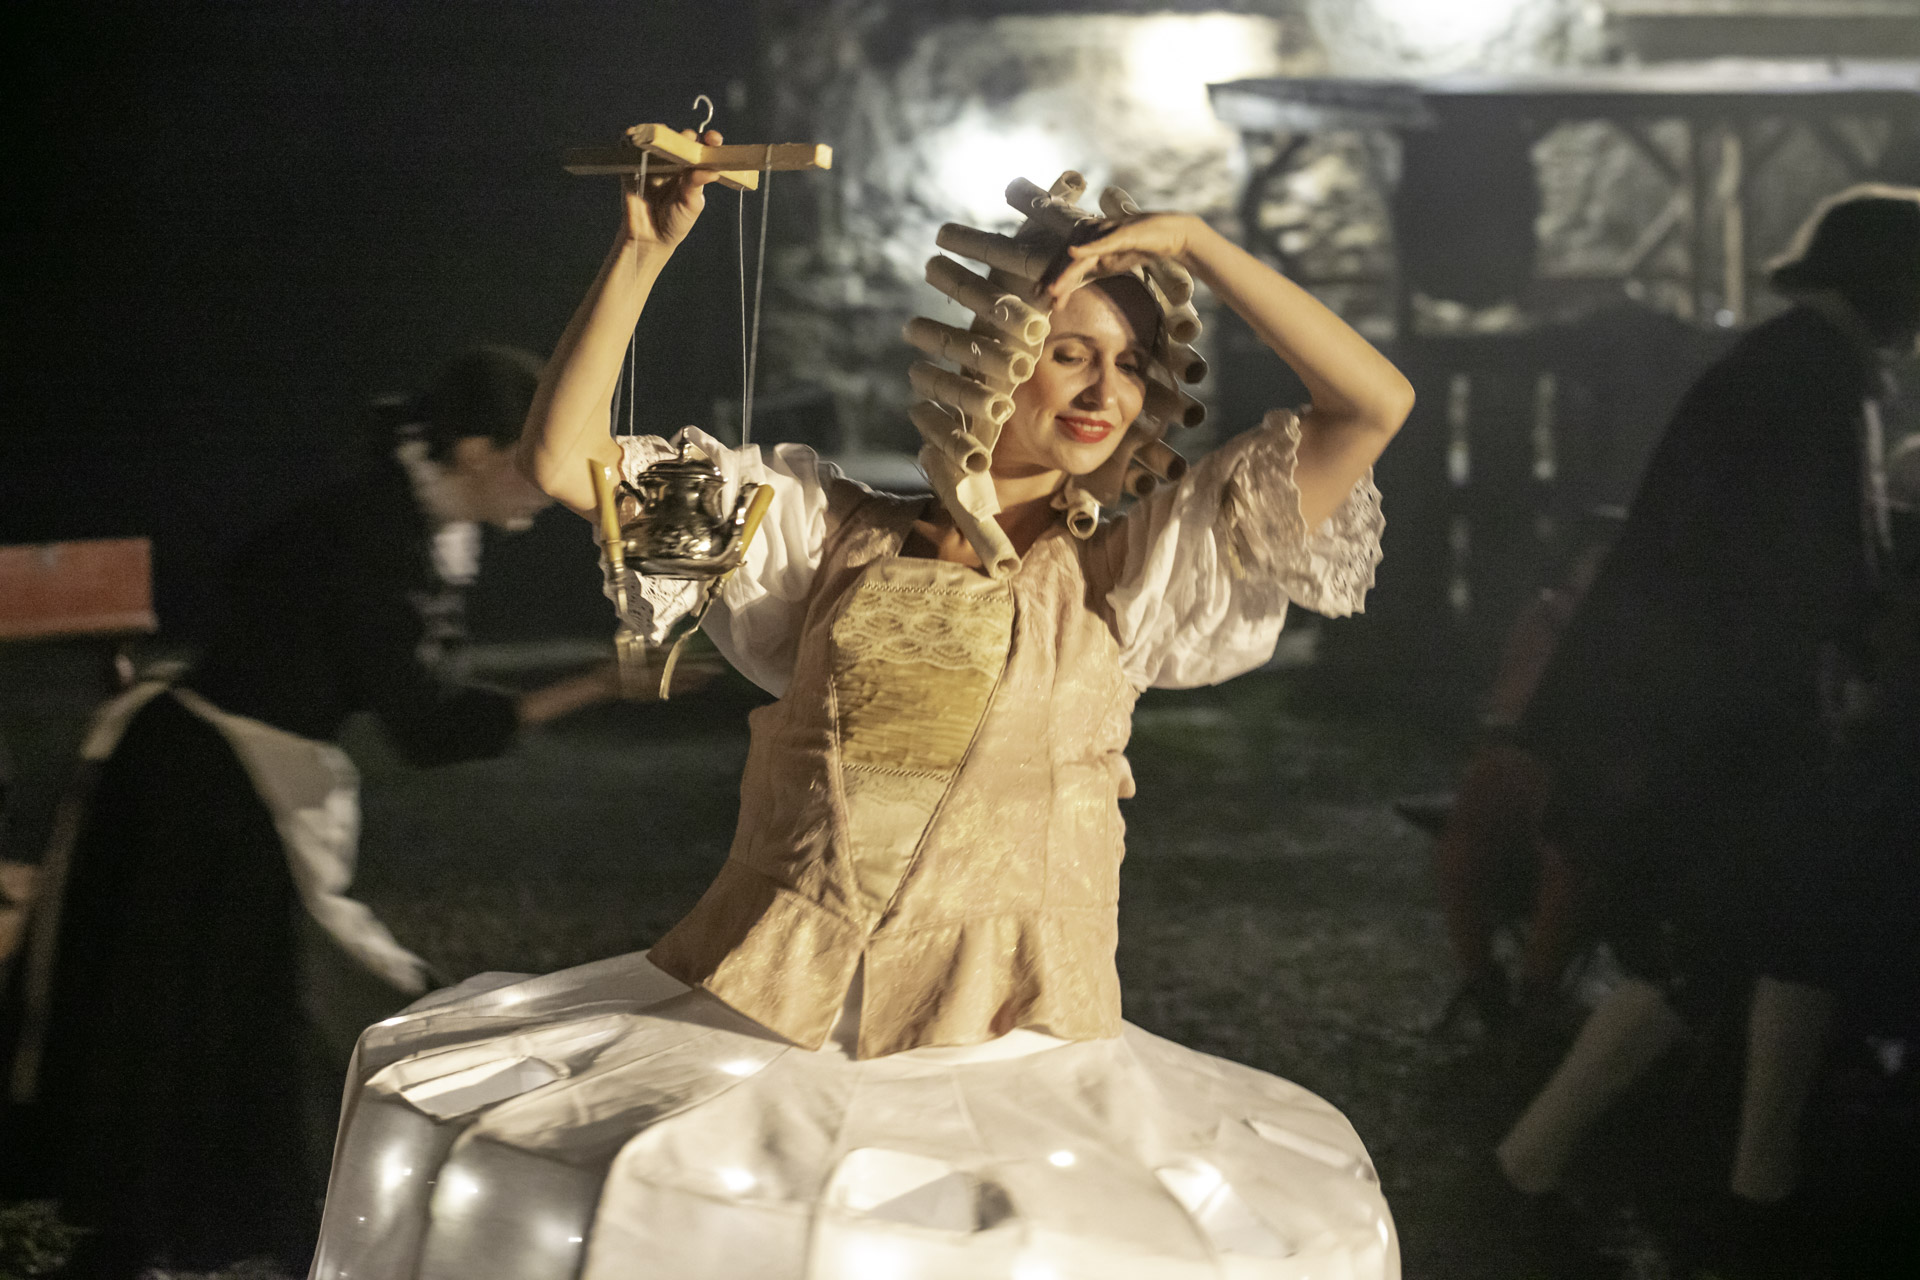 Aktorka ubrana w barokowy strój, trzyma w ręku imbryczek do herbaty